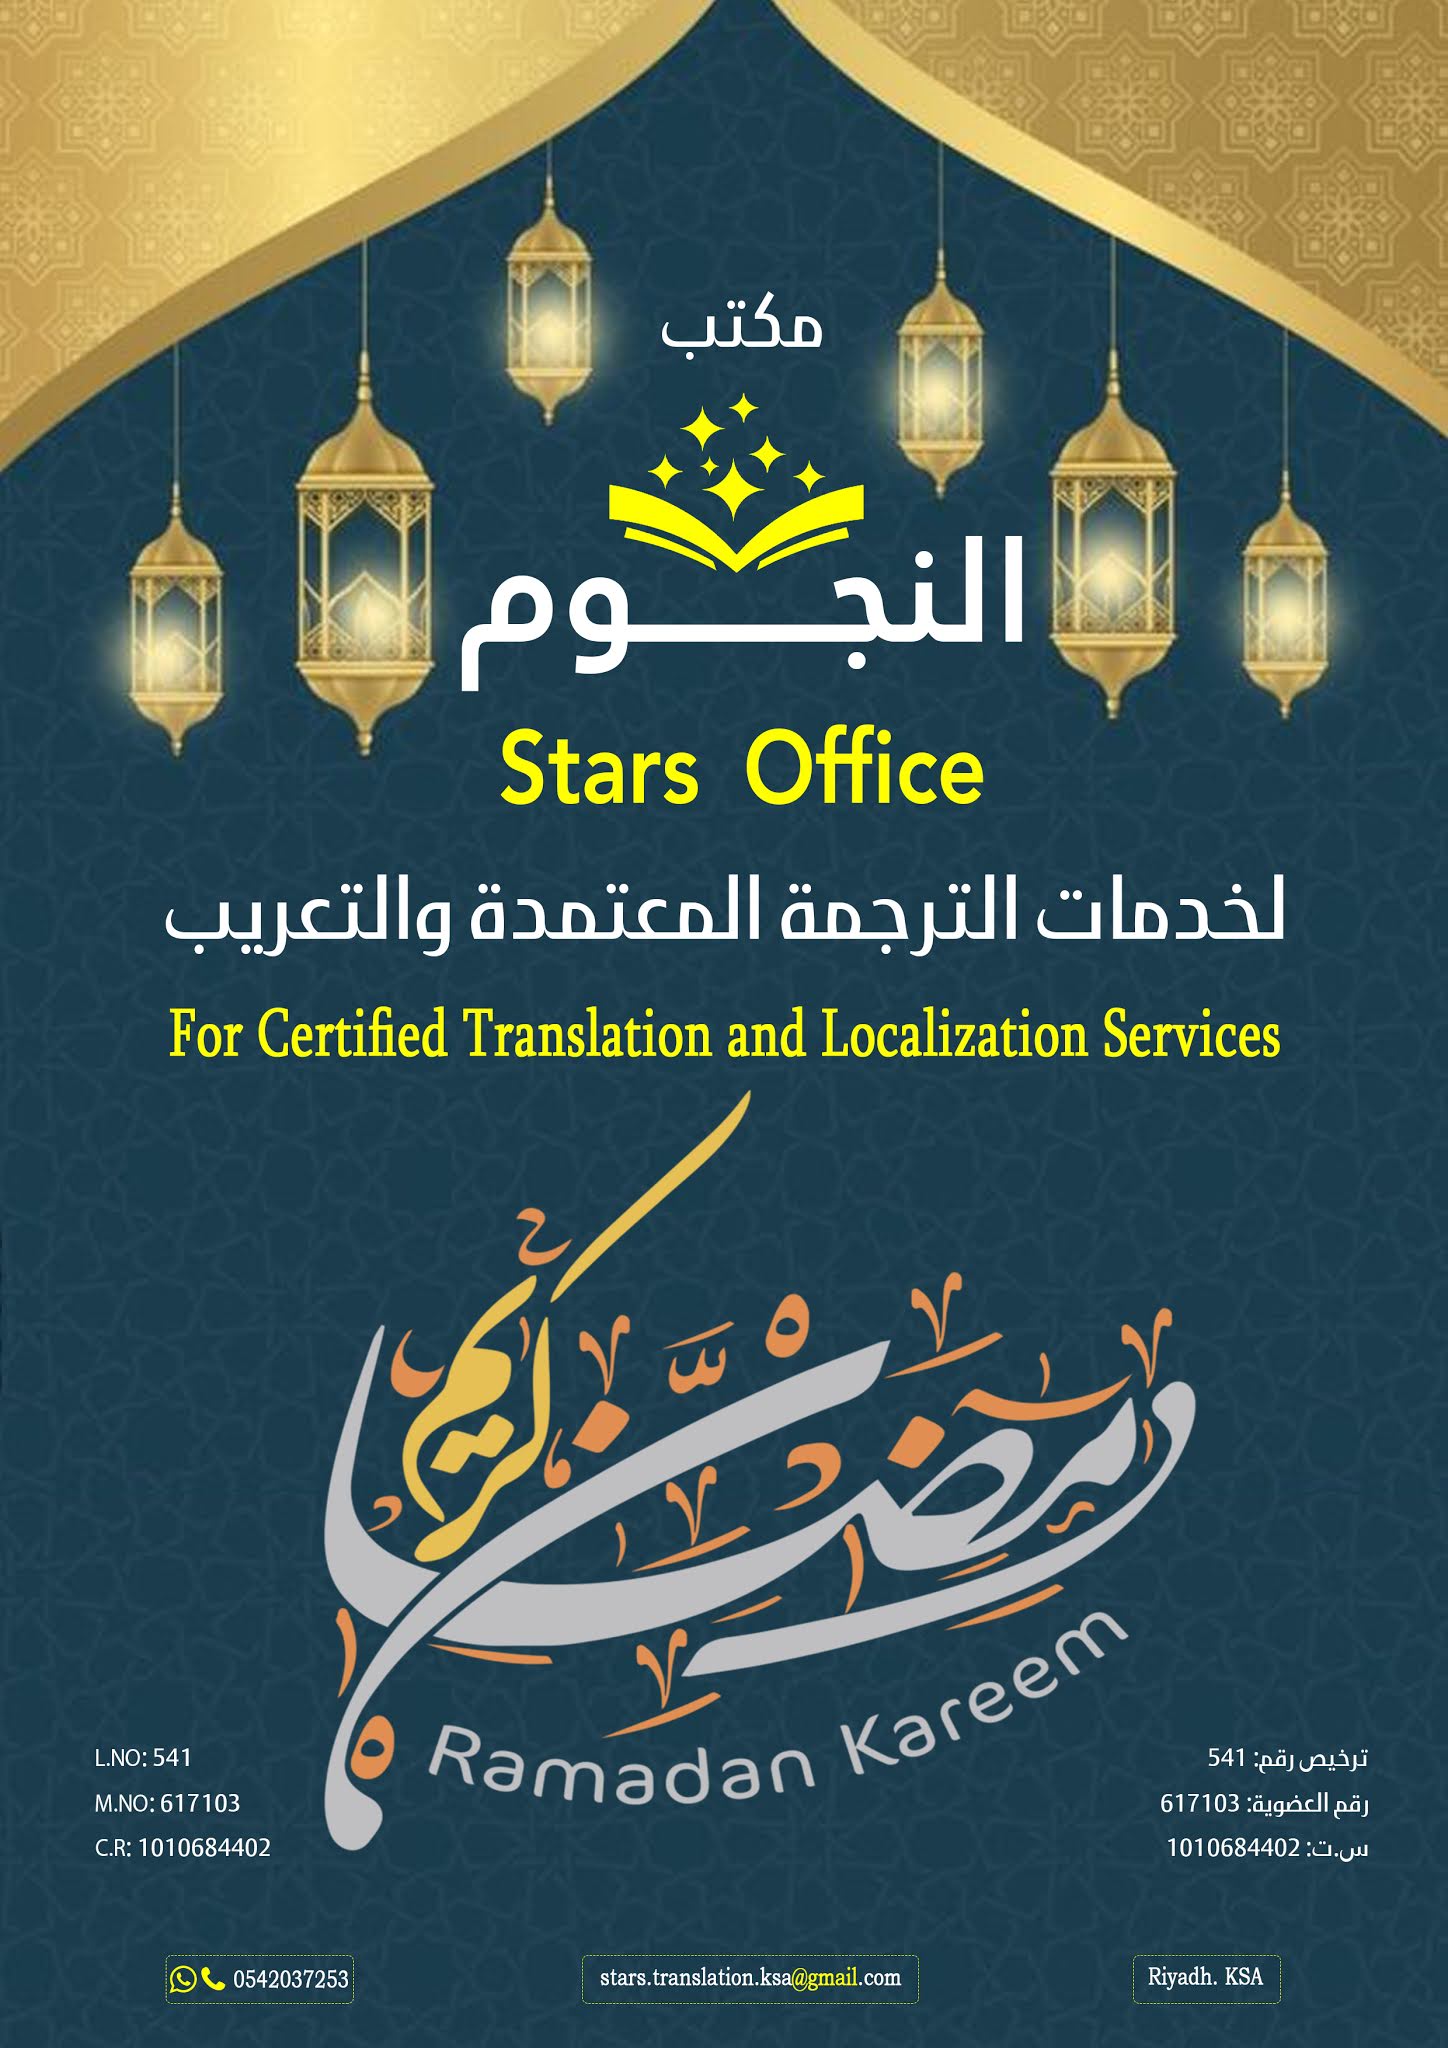 بوسترات تهنئة لشهر رمضان Ramadan Kareem للمكاتب خاصة والأعمال التجارية